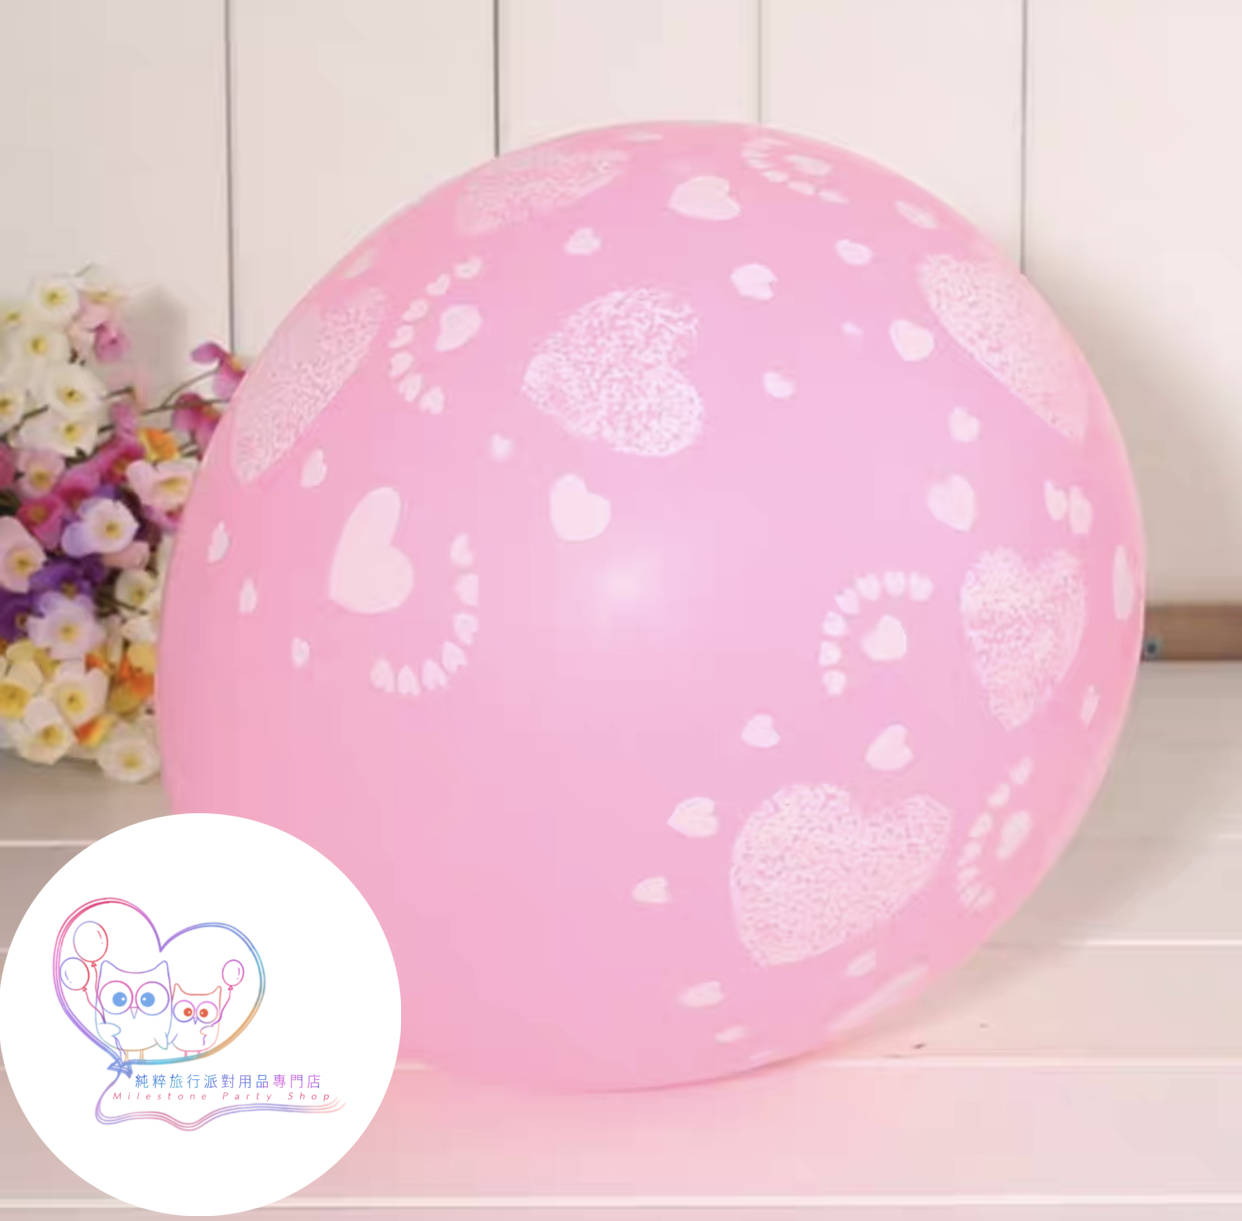 12吋乳膠氣球 (愛心粉紅色) (1pc) LBL7-3